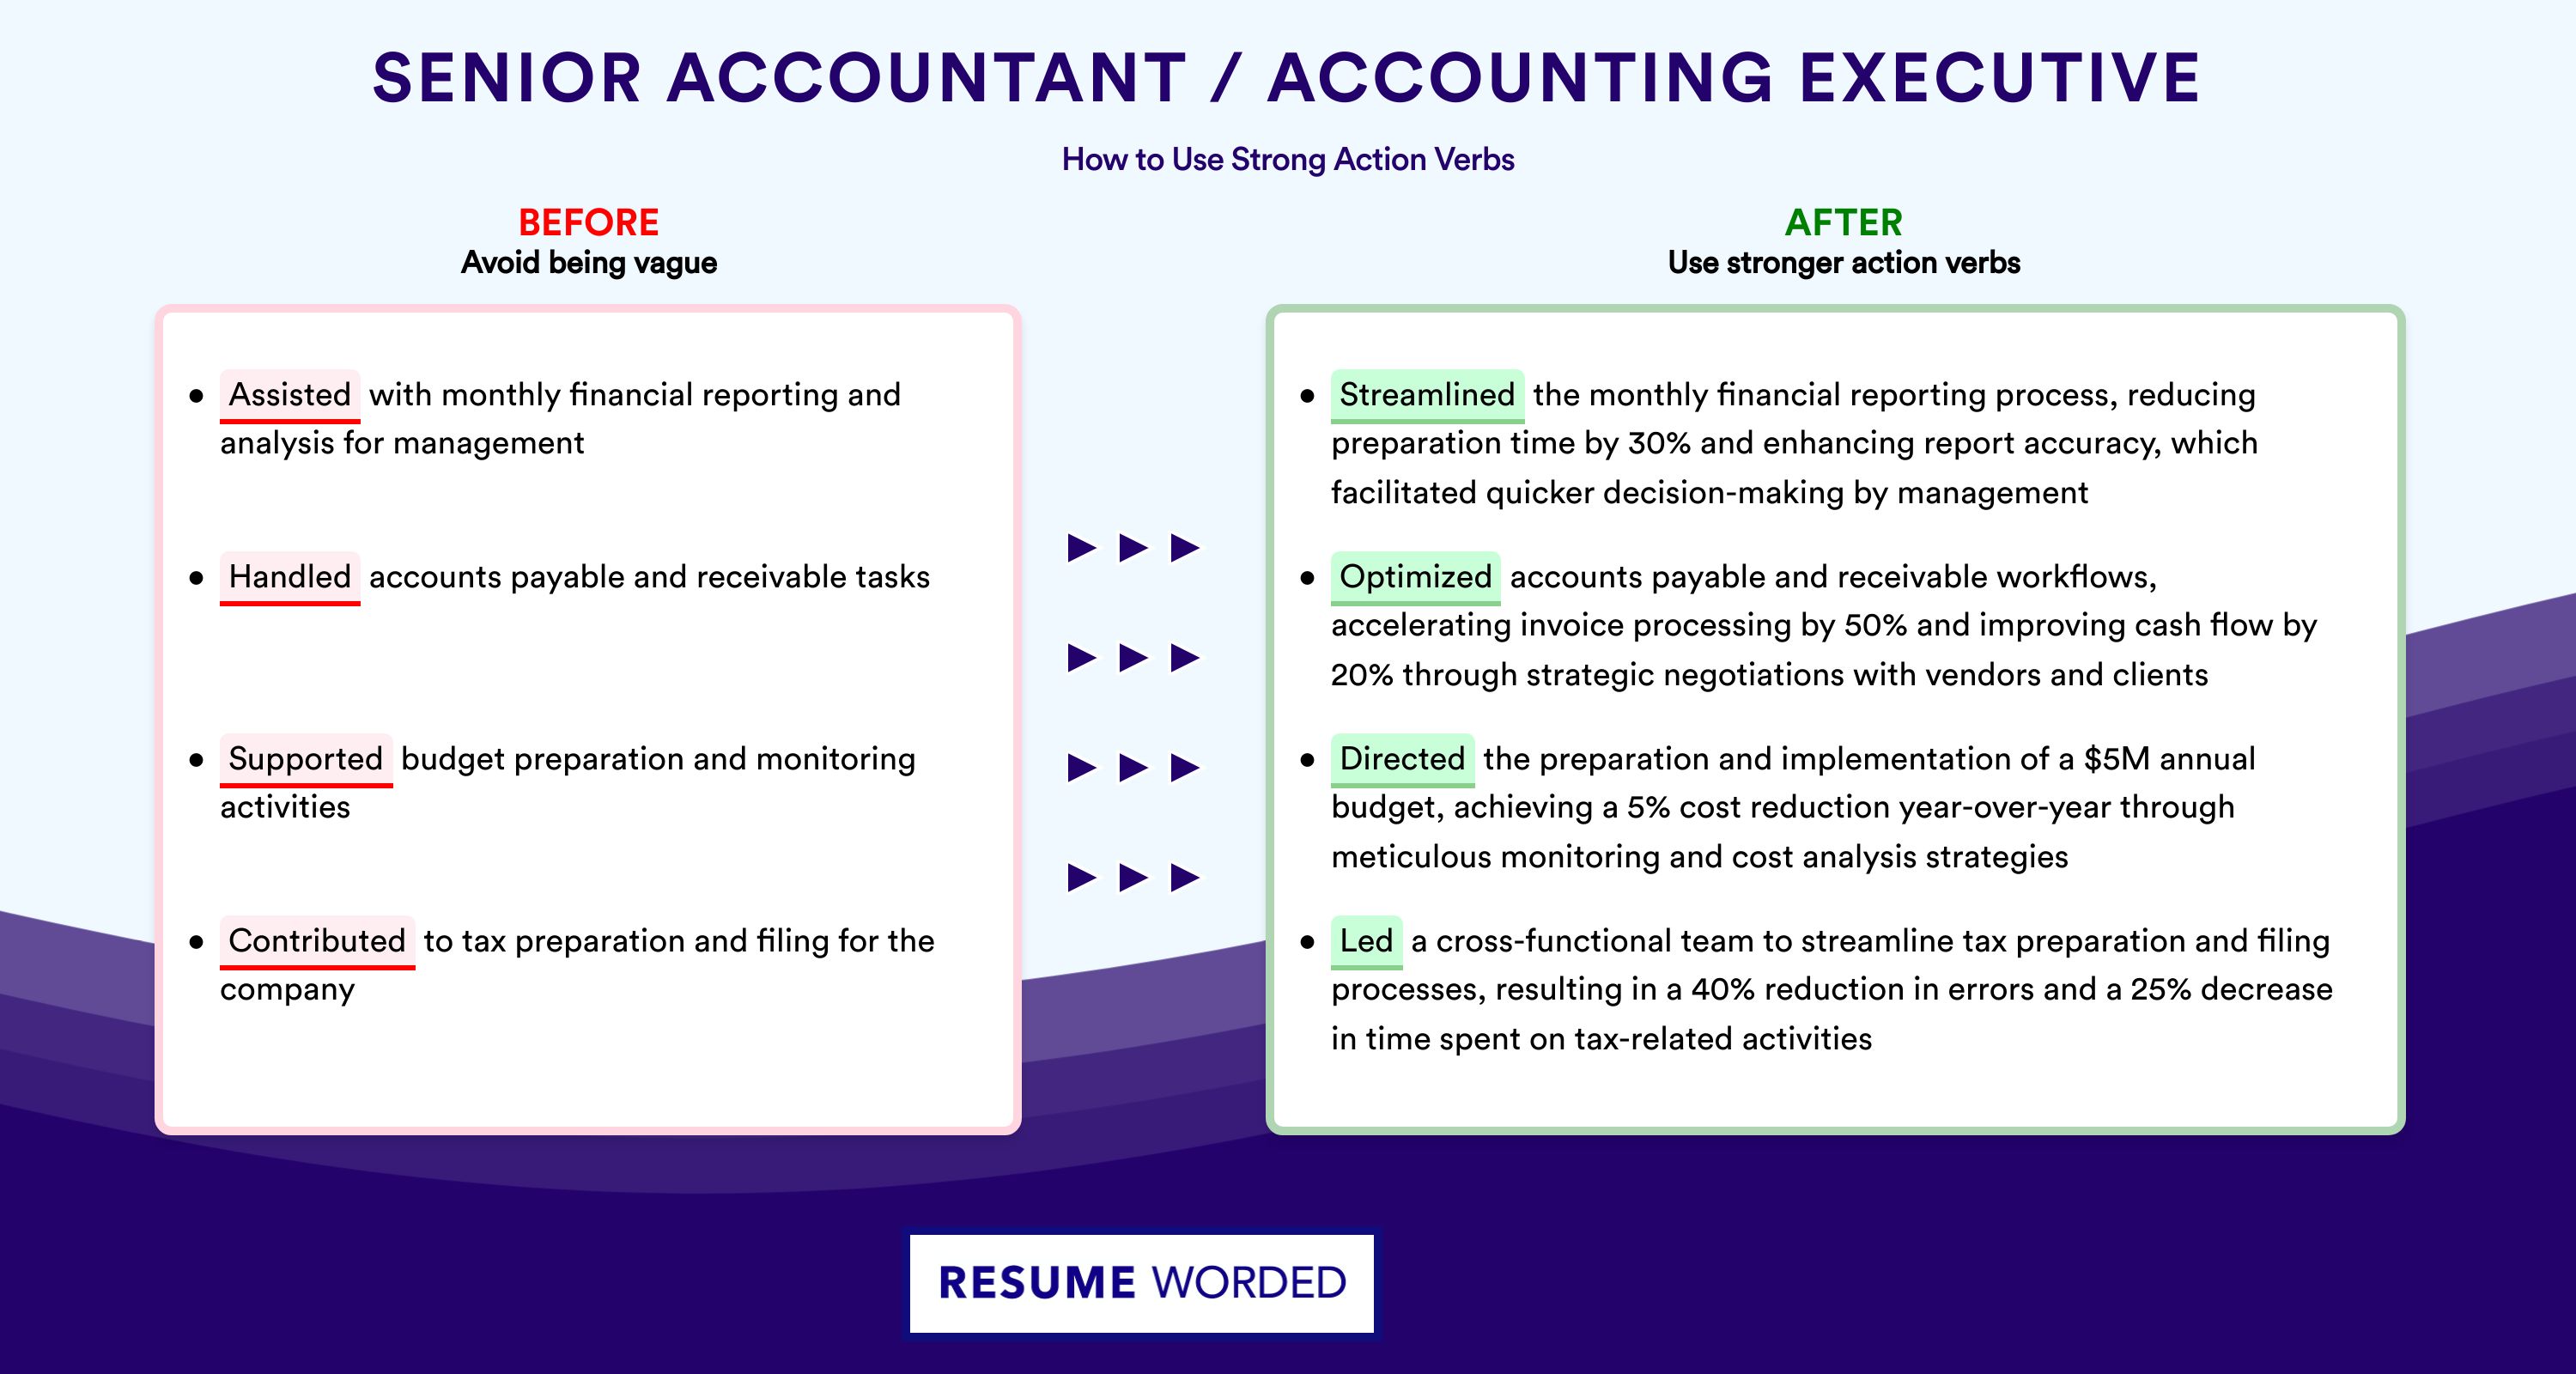 Action Verbs for Senior Accountant / Accounting Executive